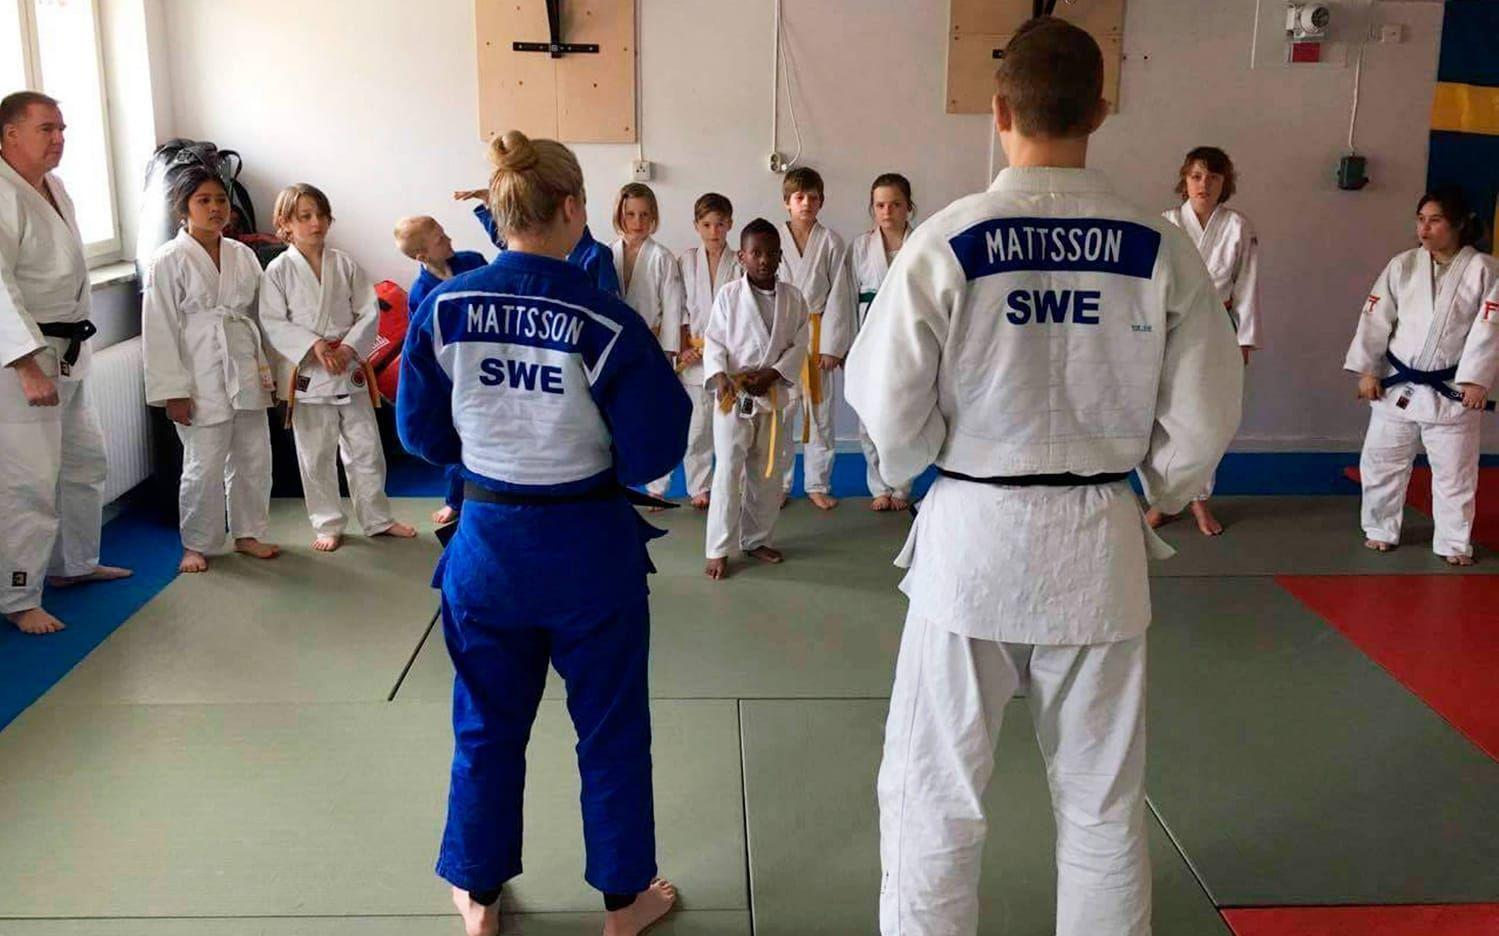 Korpehôla Judoklubb i Uddevalla anordnade Codax Judo Camp i lokalerna på Strömstadsvägen.